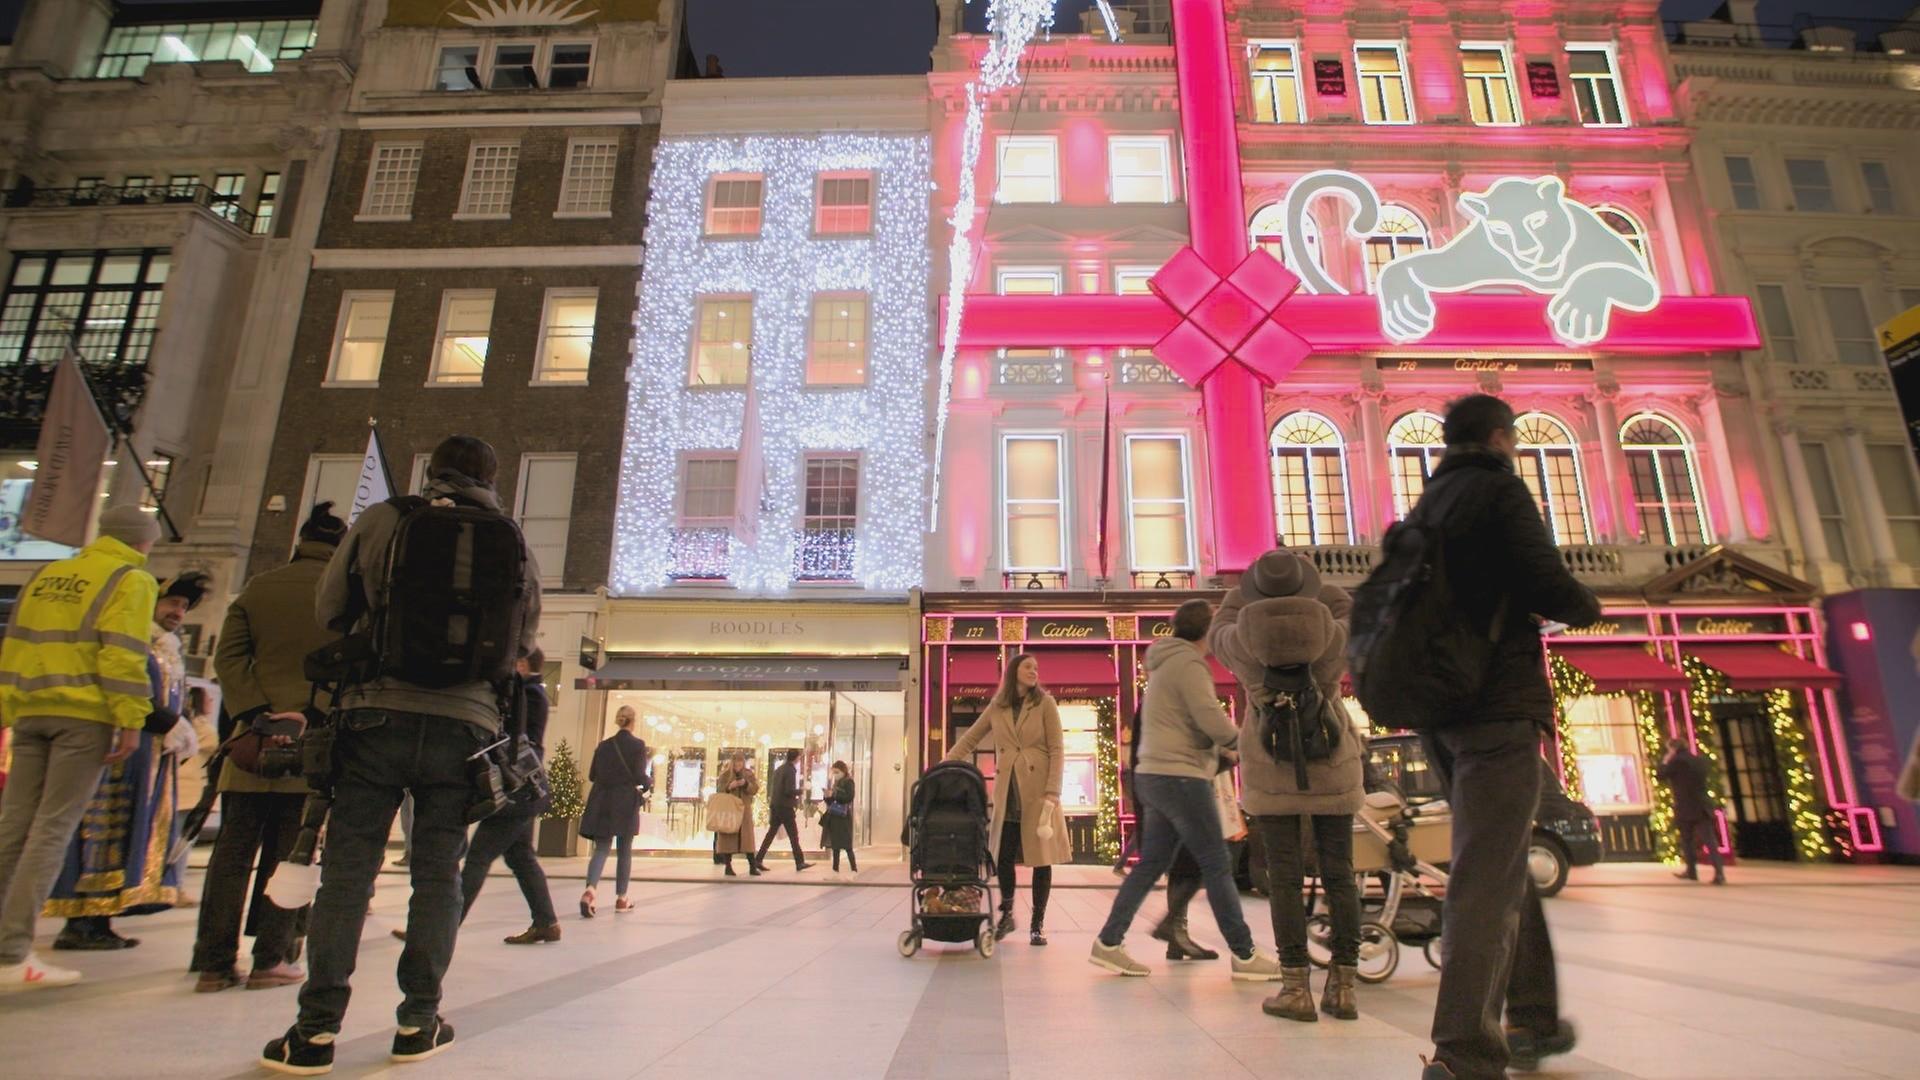 Zahlreiche Fußgänger in winterlicher Kleidung vor einer weihnachtlich beleuchteten Häuserfront. Im Erdgeschoss der Häuser sind Geschäfte der Marken Boodles und Cartier zu erkennen.